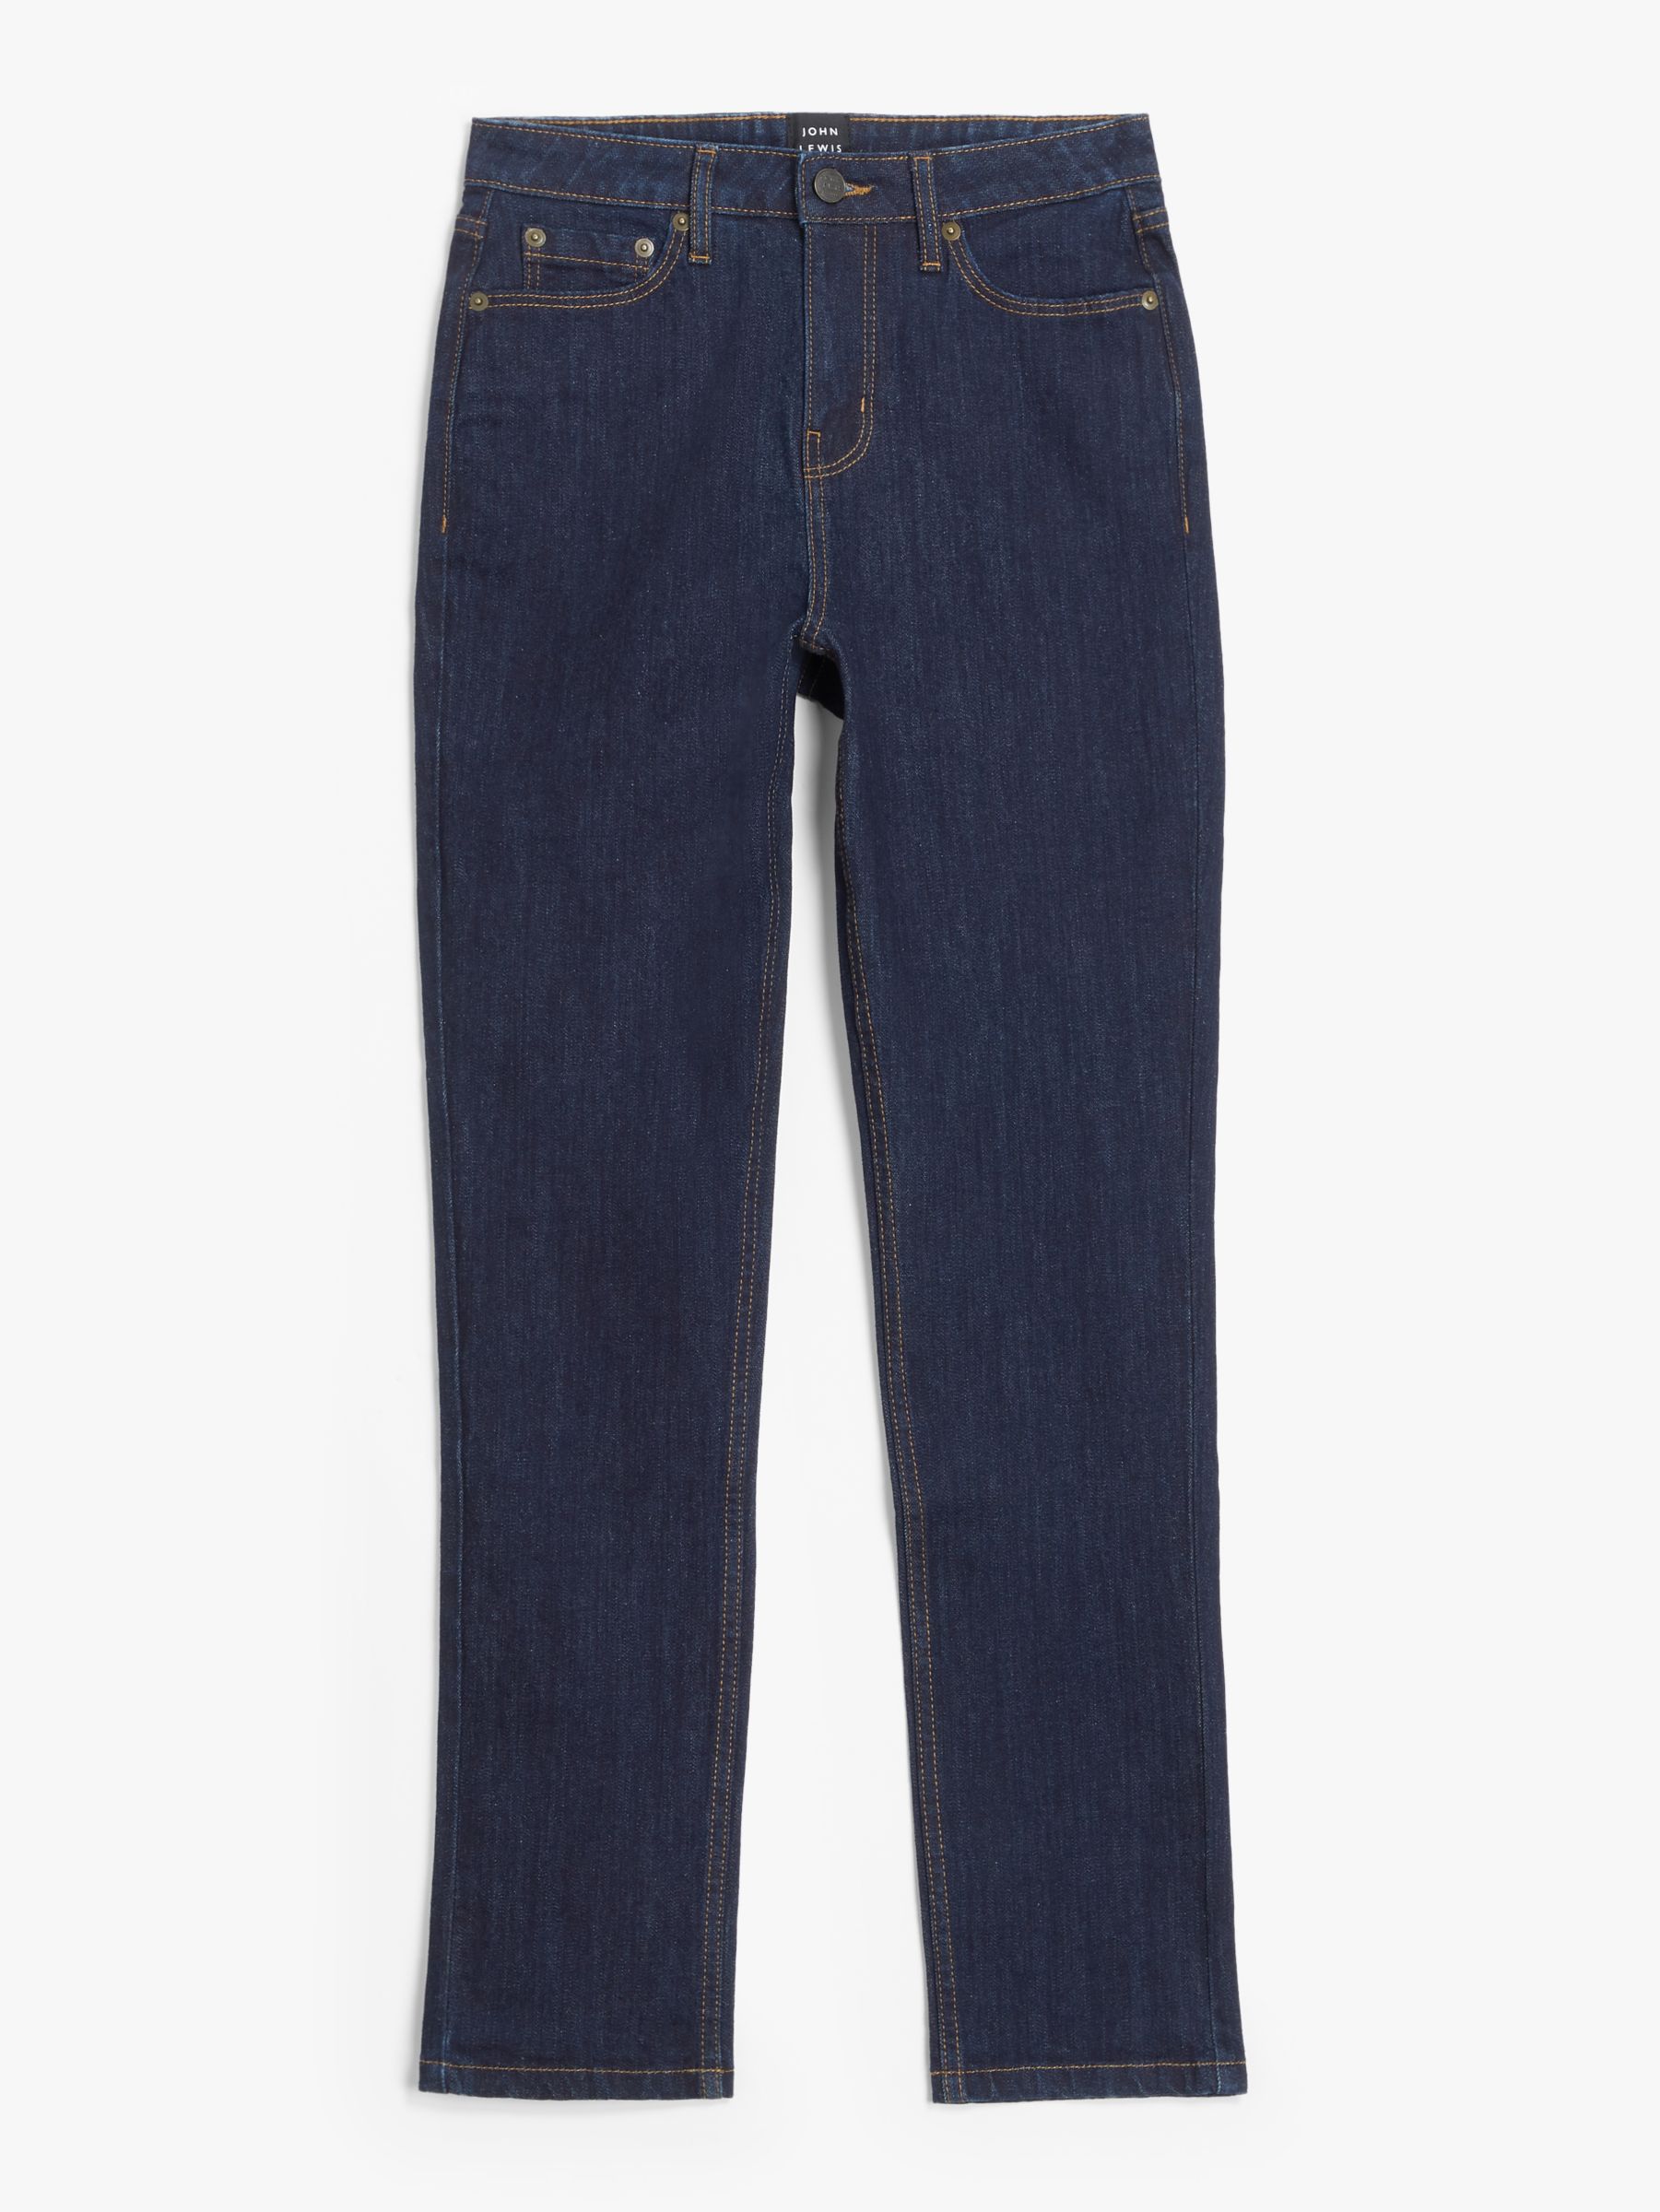 John Lewis Basic Easy Fit Jeans, Indigo at John Lewis & Partners